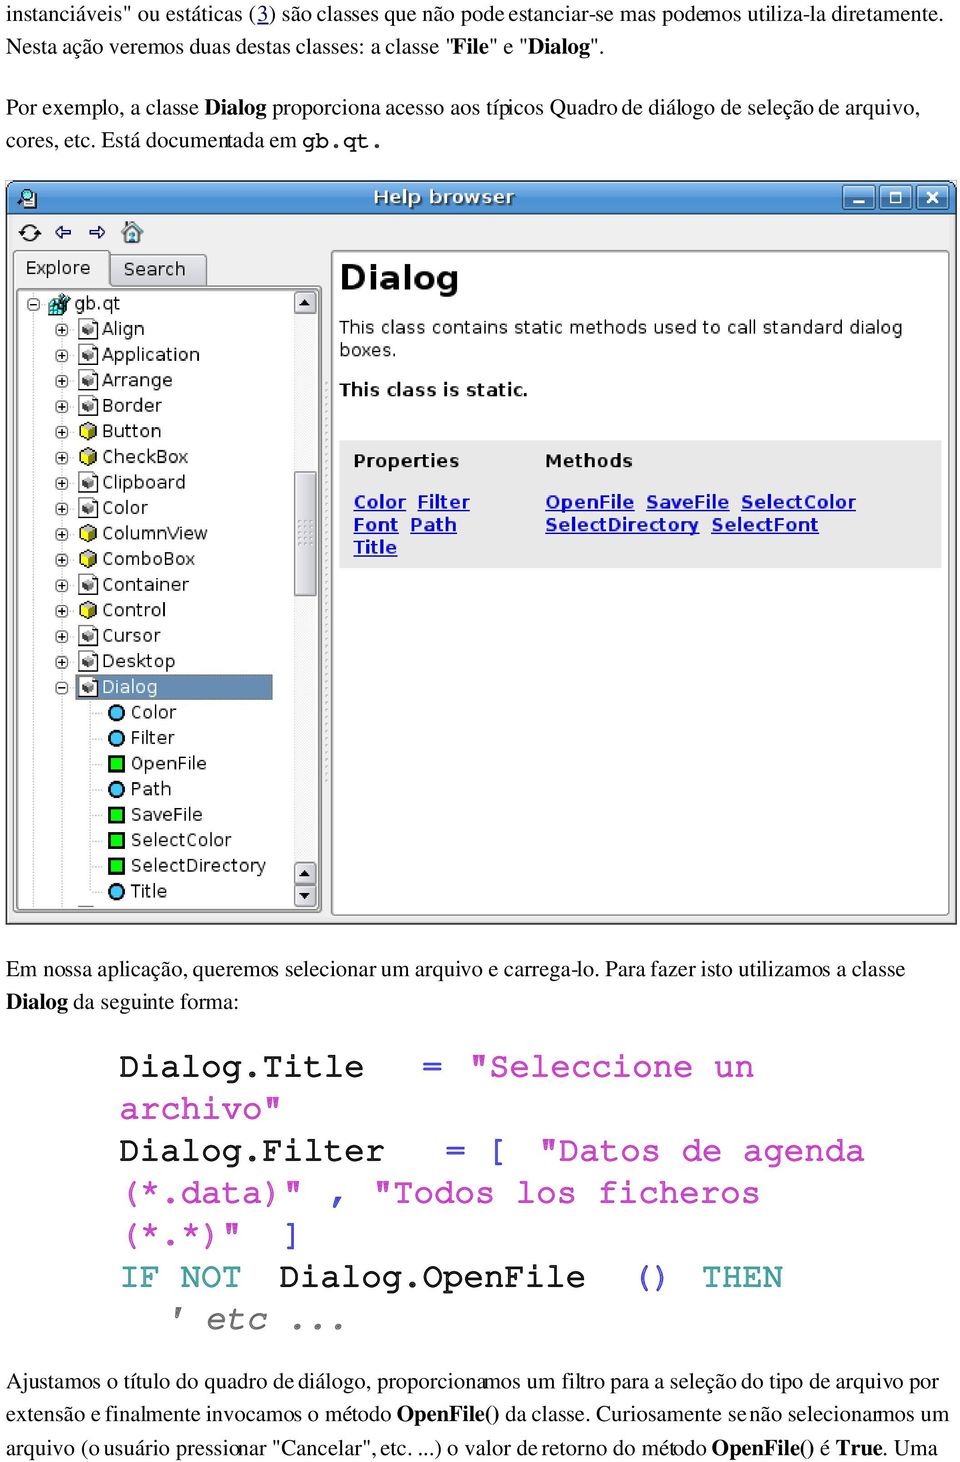 parafazeristoutilizamosaclasse Dialogdaseguinteforma: Dialog.Title ="Seleccioneun archivo" Dialog.Filter =[ "Datosdeagenda (*.data)","todoslosficheros (*.*)" ] IFNOT Dialog.OpenFile () THEN 'etc.